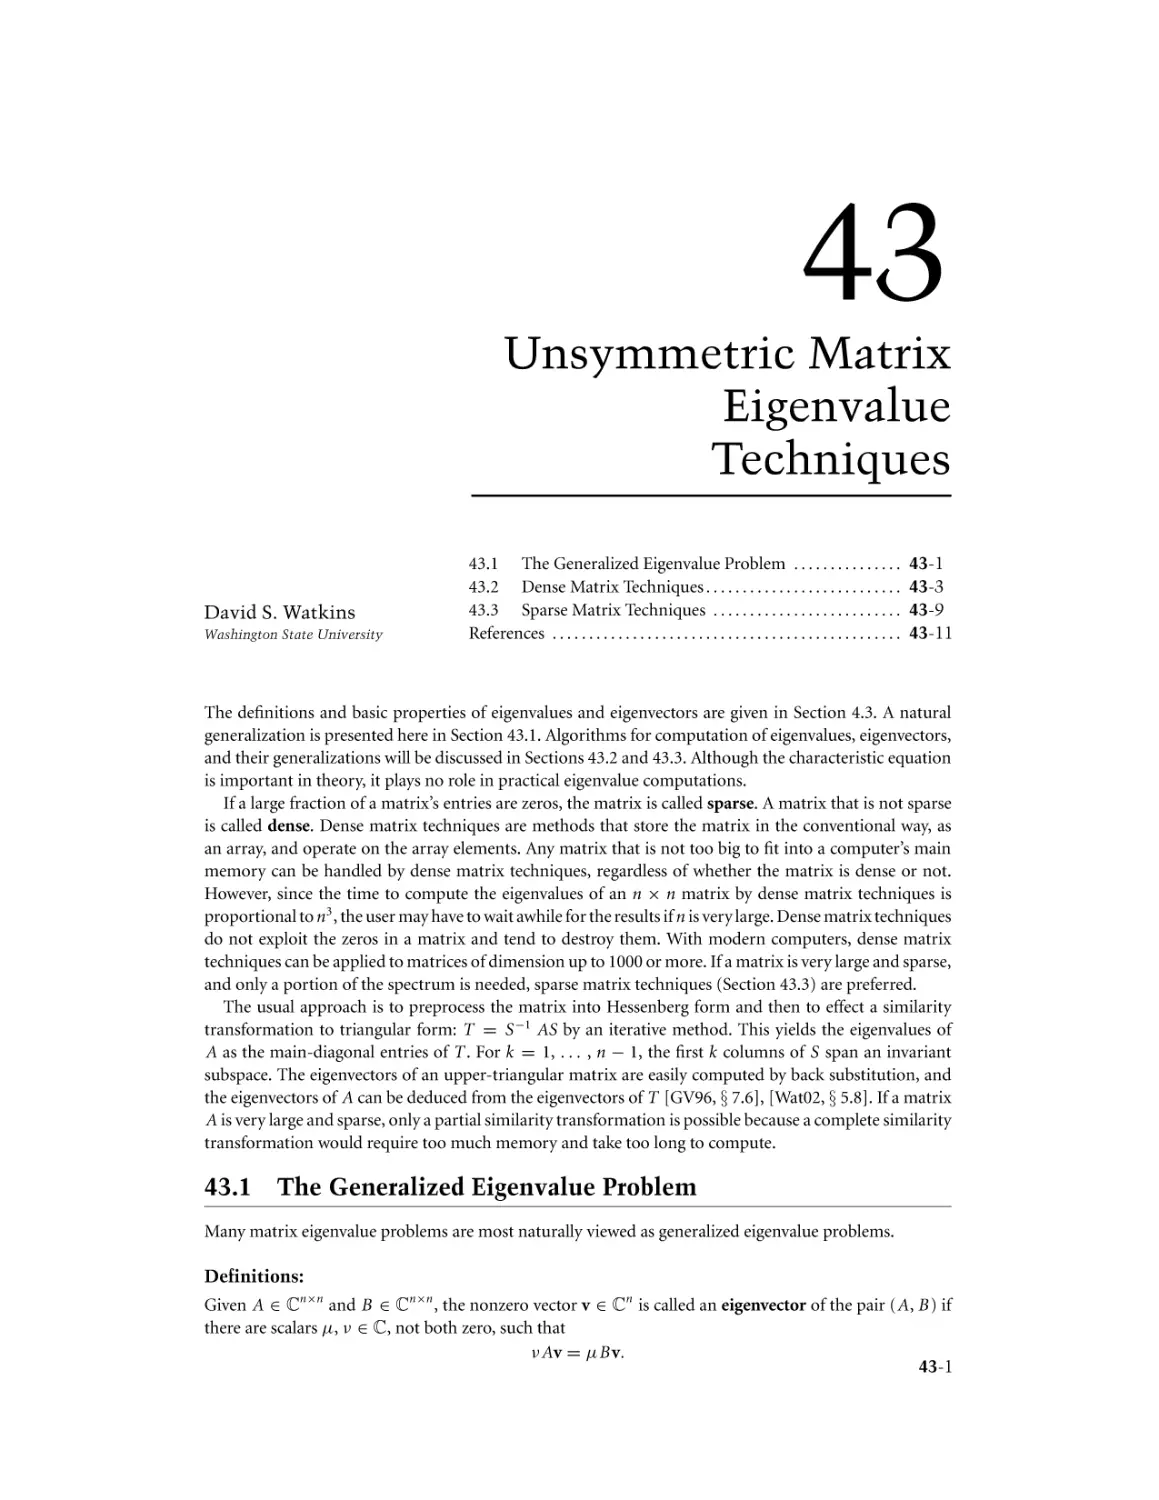 Chapter 43. Unsymmetric Matrix Eigenvalue Techniques